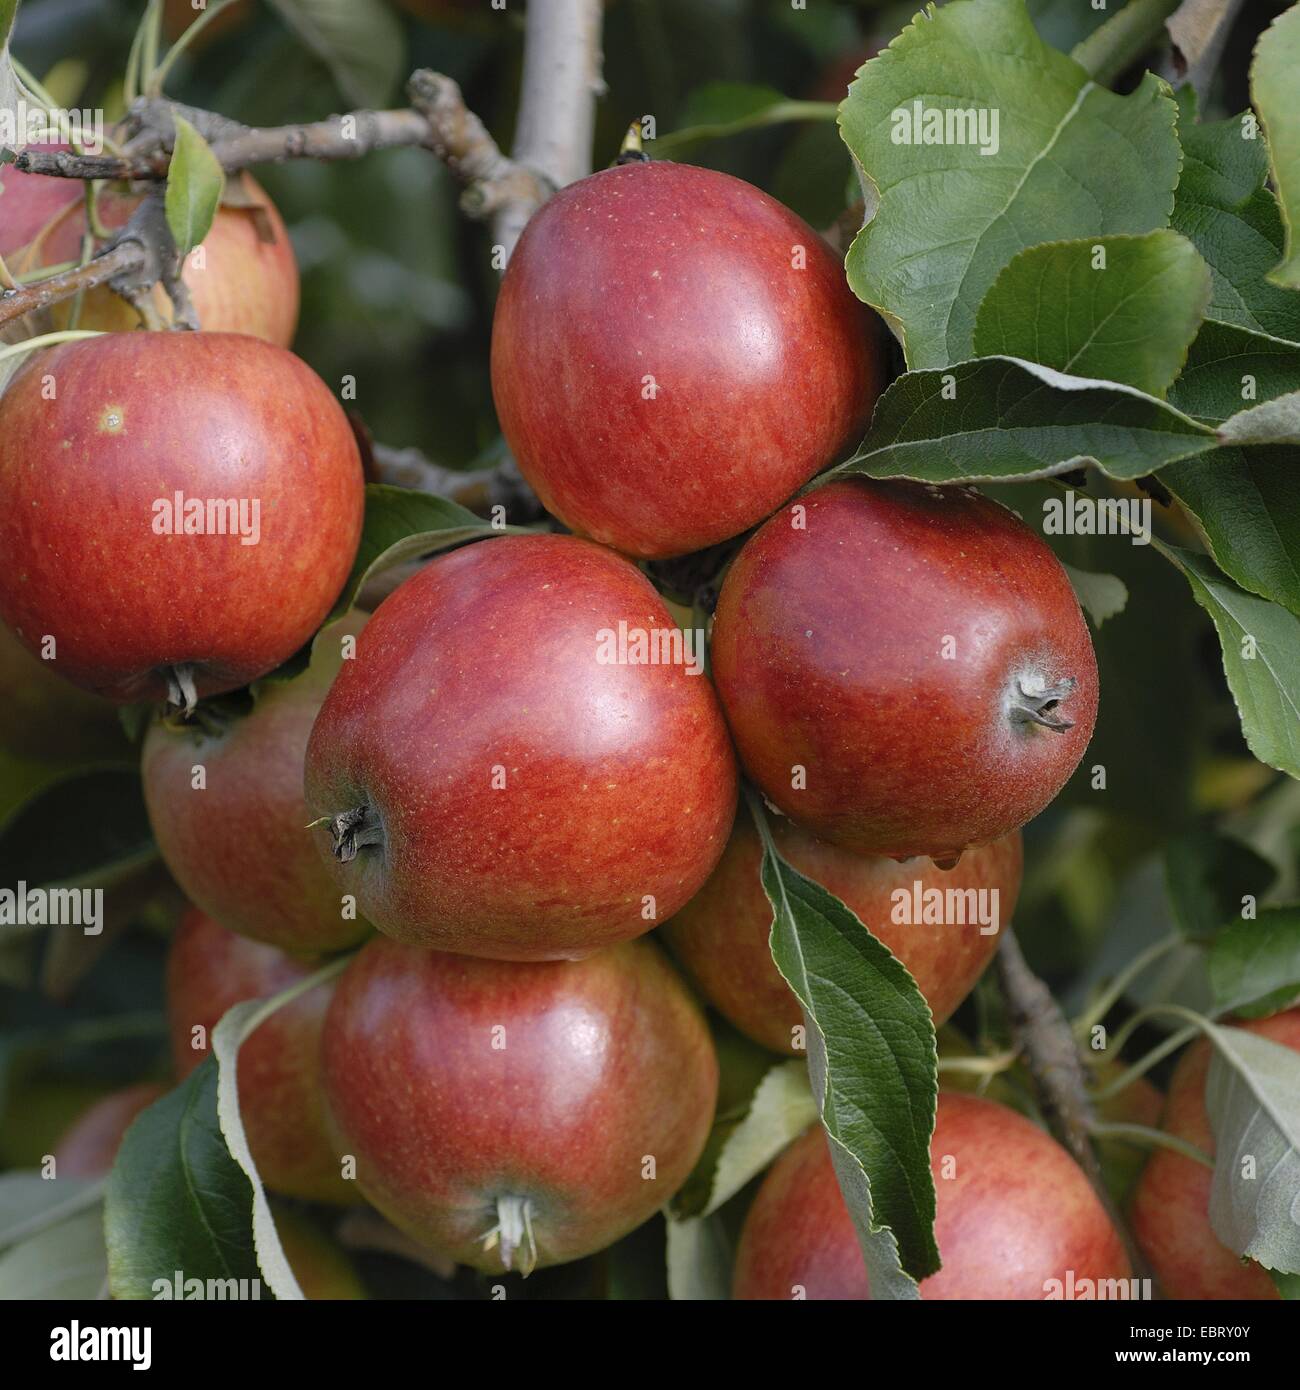 Manzano (Malus domestica "Clivia', Malus domestica), cultivar Clivia Clivia, manzanas de un árbol Foto de stock